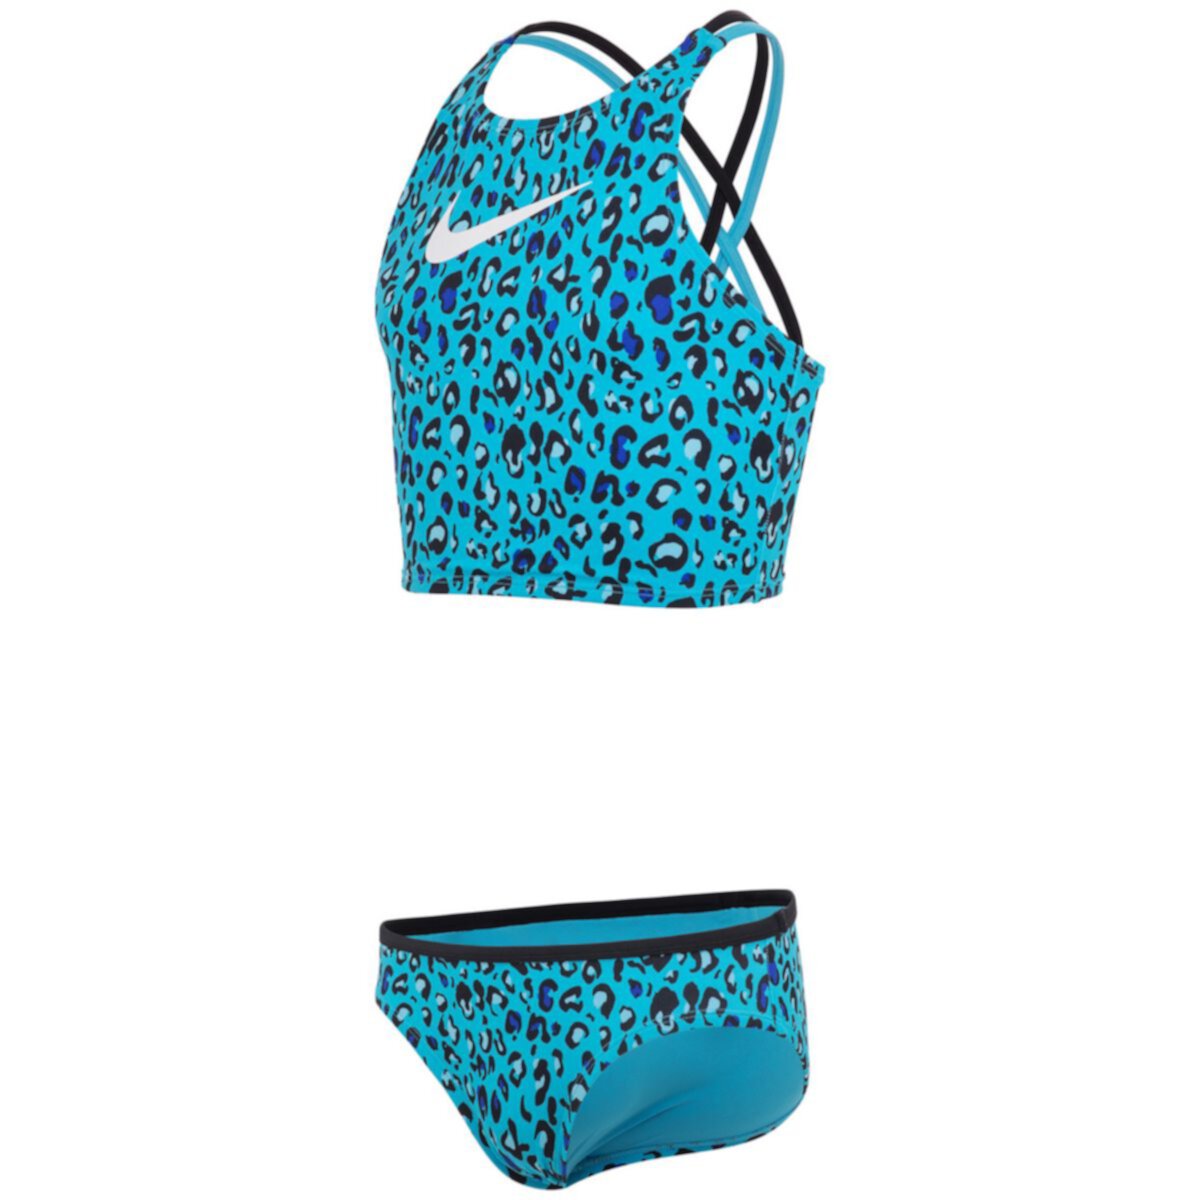 Комплект купального костюма мидкини и низа Cheetah Spiderback Midkini & Bottoms для девочек 7–16 лет Nike